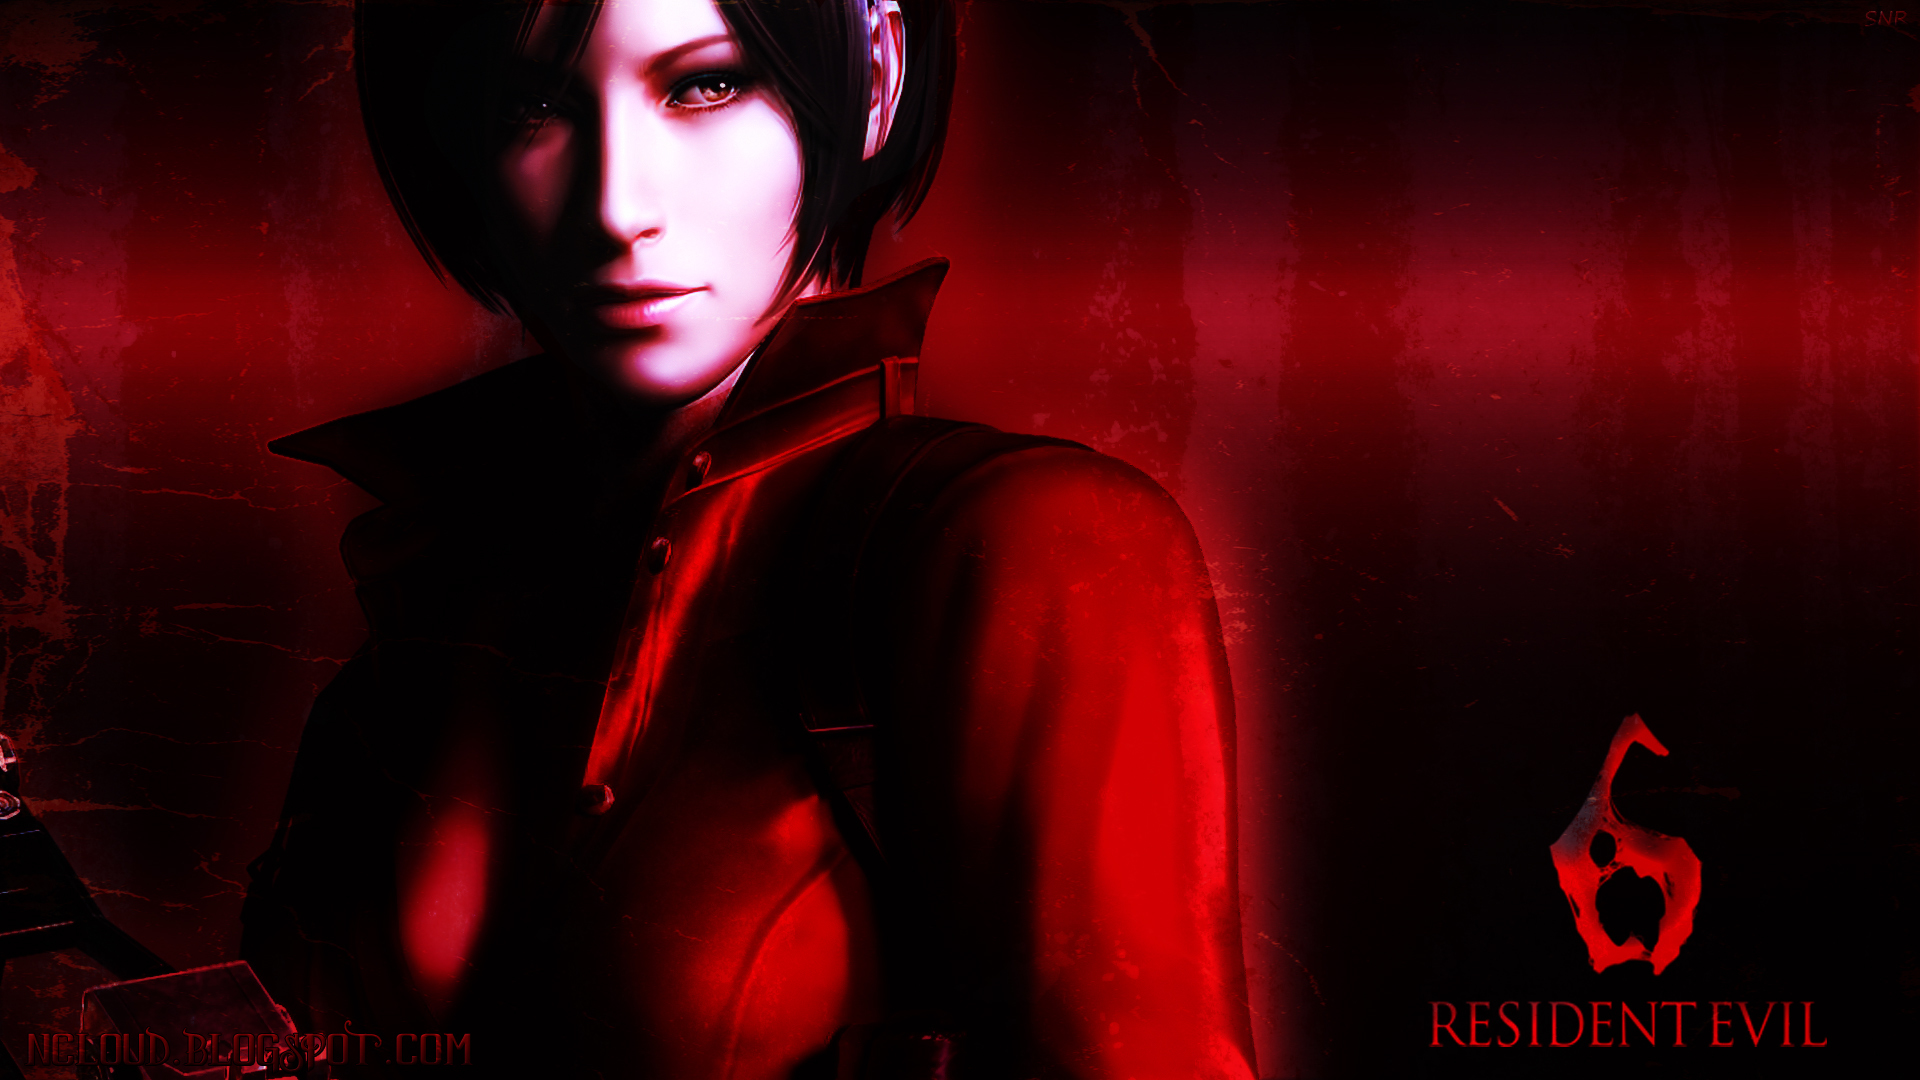 Melhores papéis de parede de Resident Evil para tela do telefone